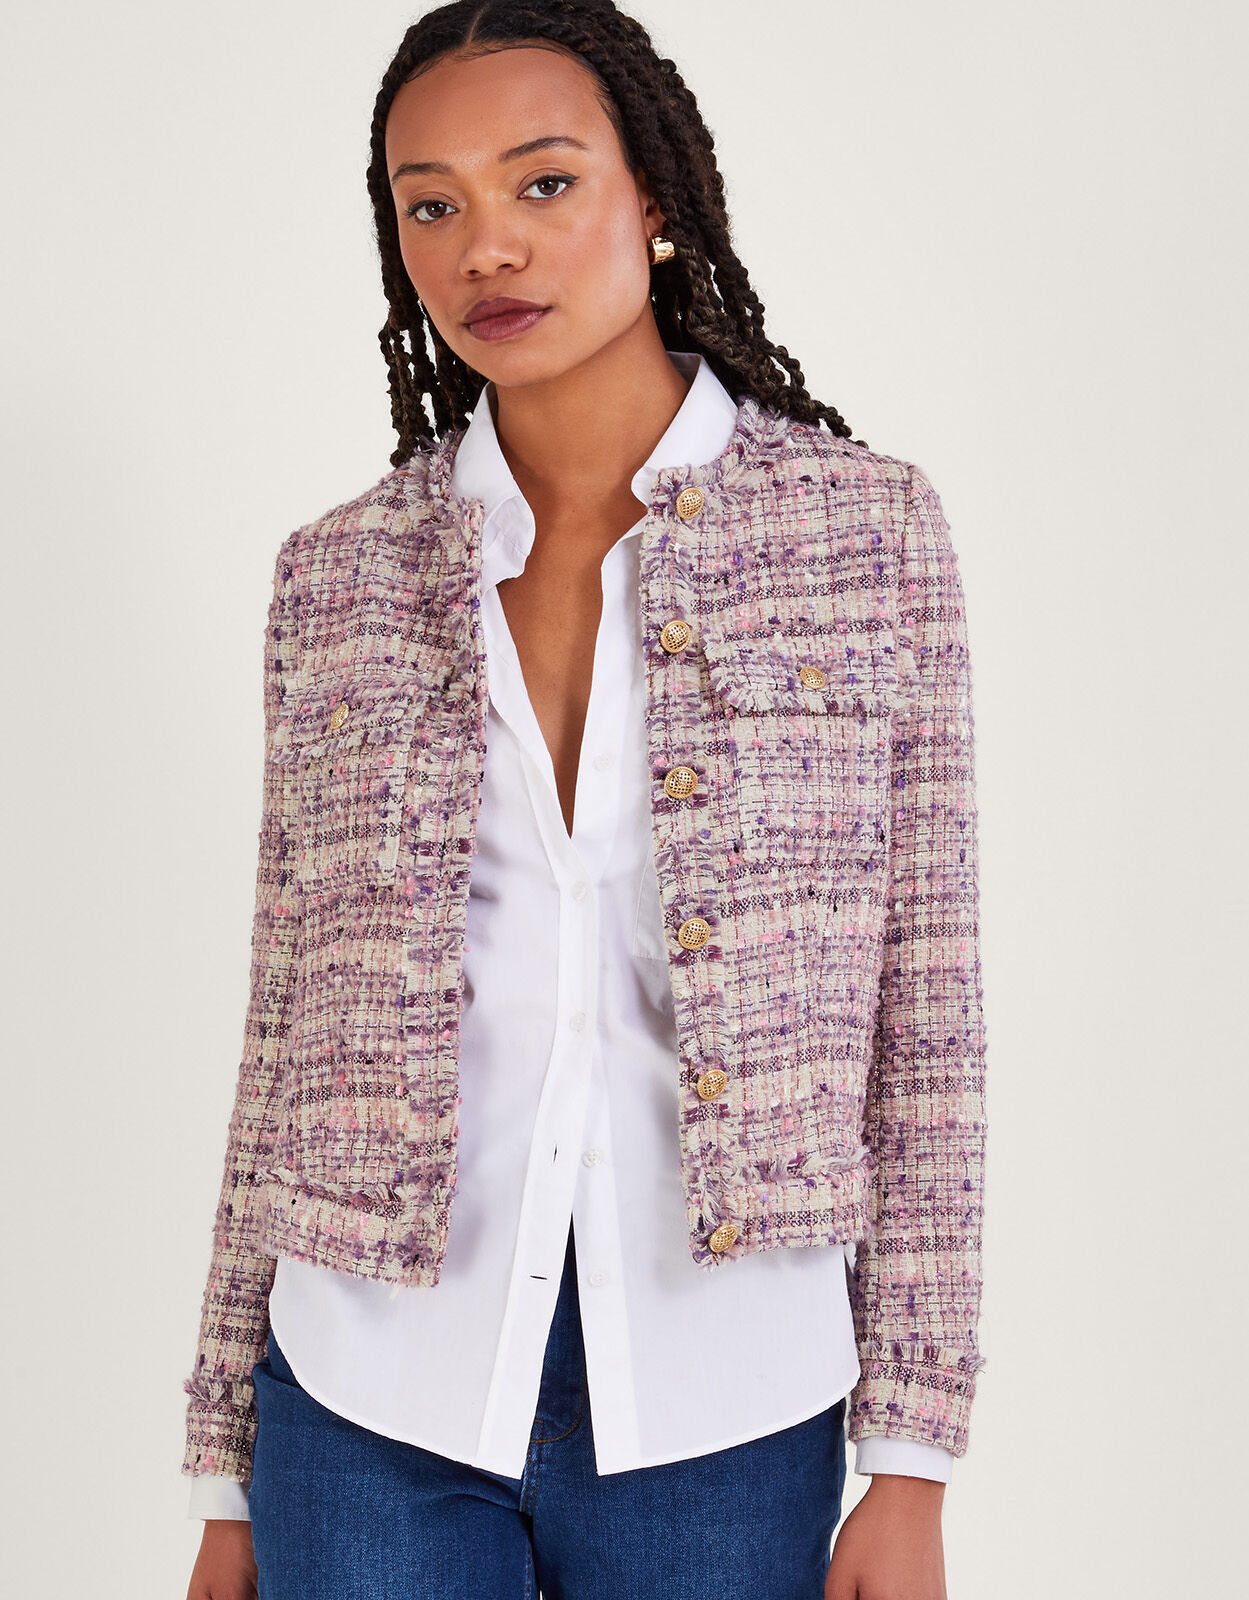 Tweed Jackets Style 2021 | Tweed Jacket Fashion Women | Tweed Autumn Jacket  Women - Jackets - Aliexpress